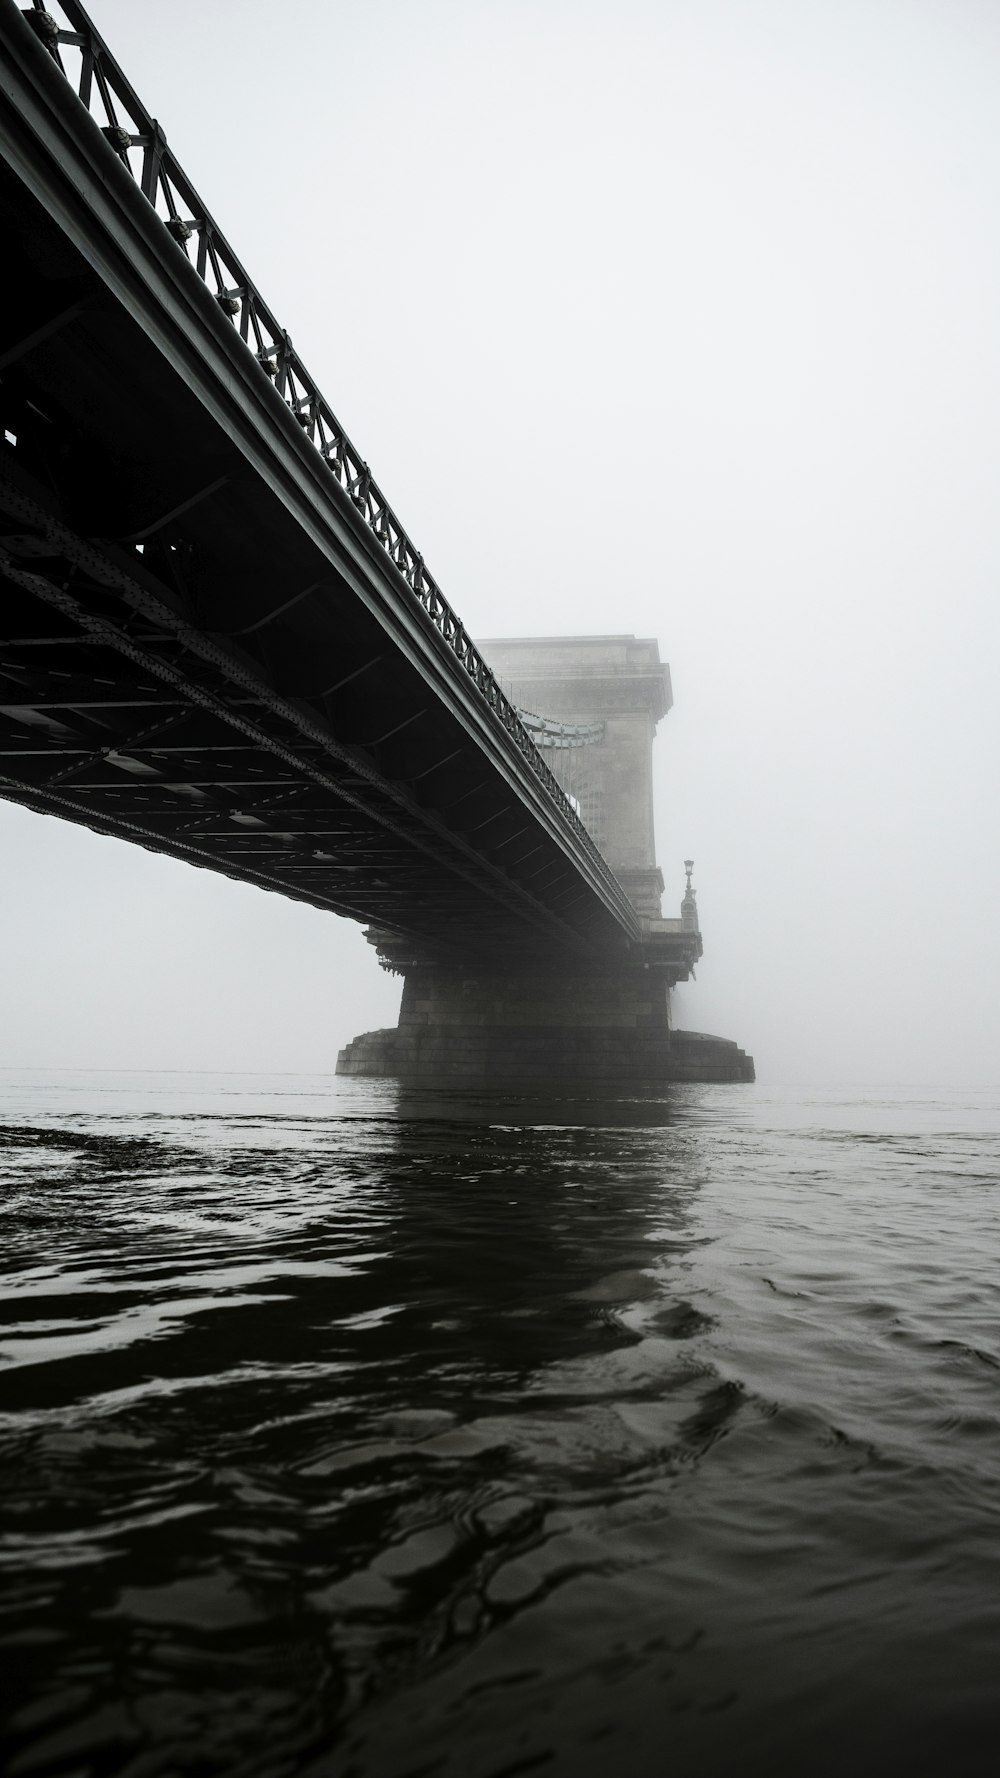 Fotografía en escala de grises de un puente colgante sobre aguas tranquilas